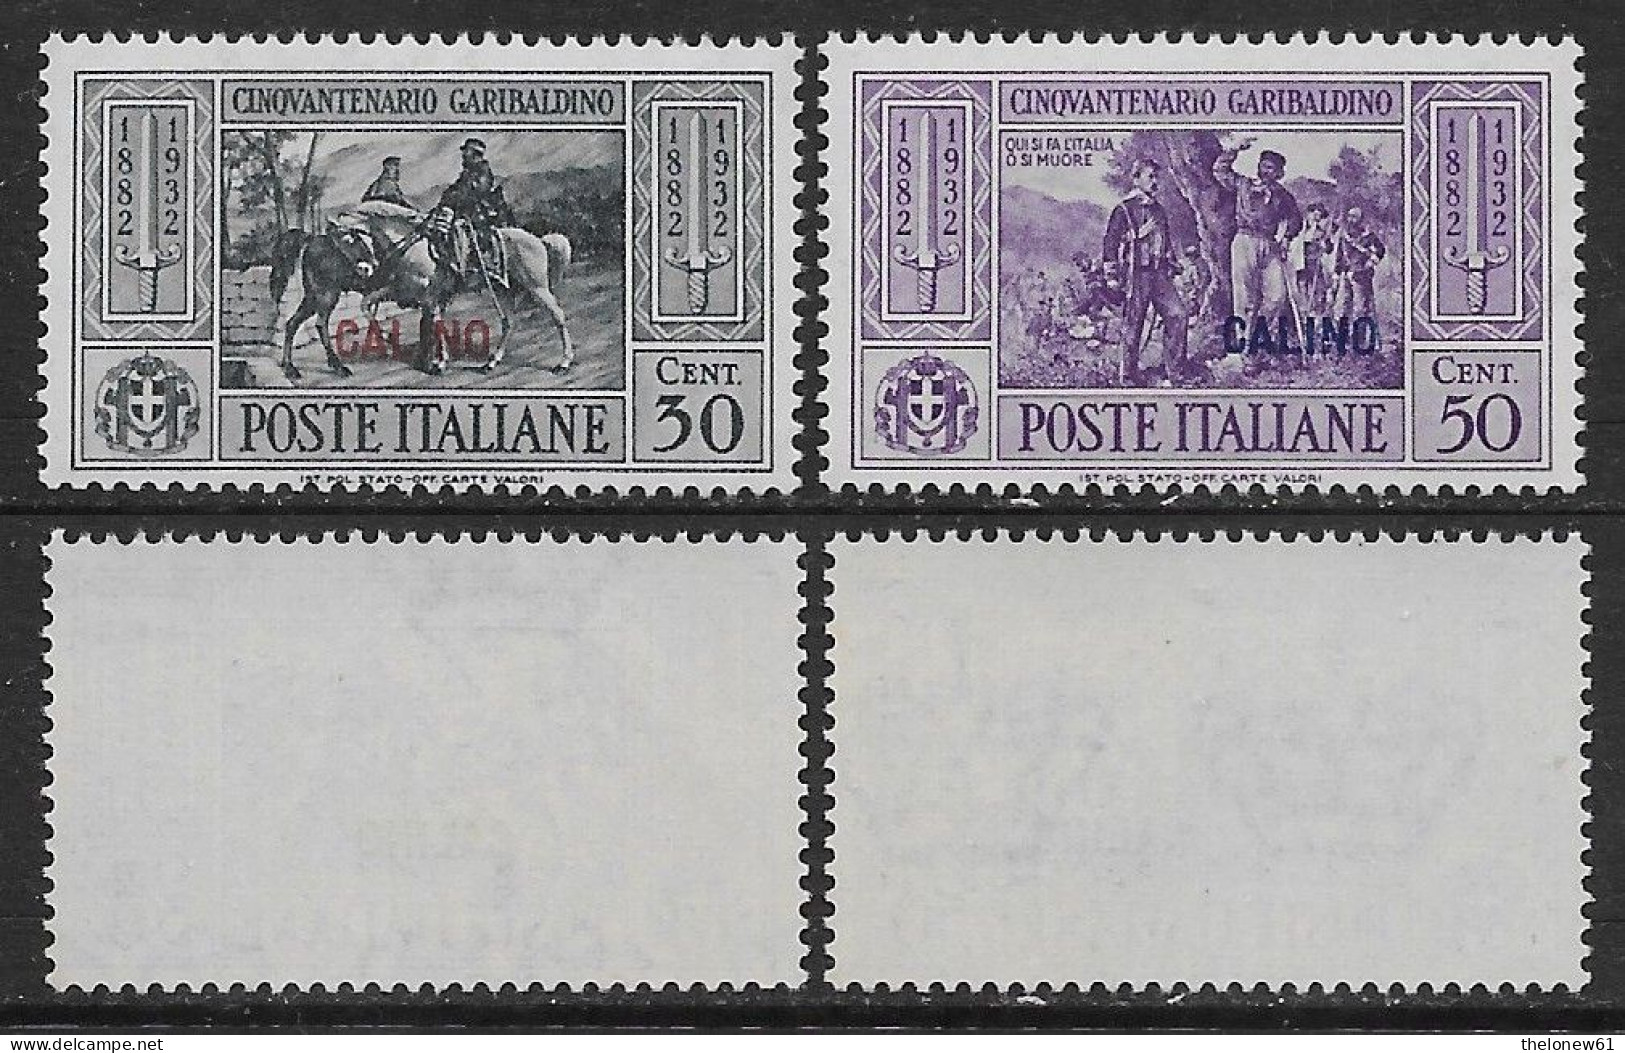 Italia Italy 1932 Colonie Egeo Calino Garibaldi 2val Sa N.20-21 Nuovi Integri MNH ** - Egeo (Calino)